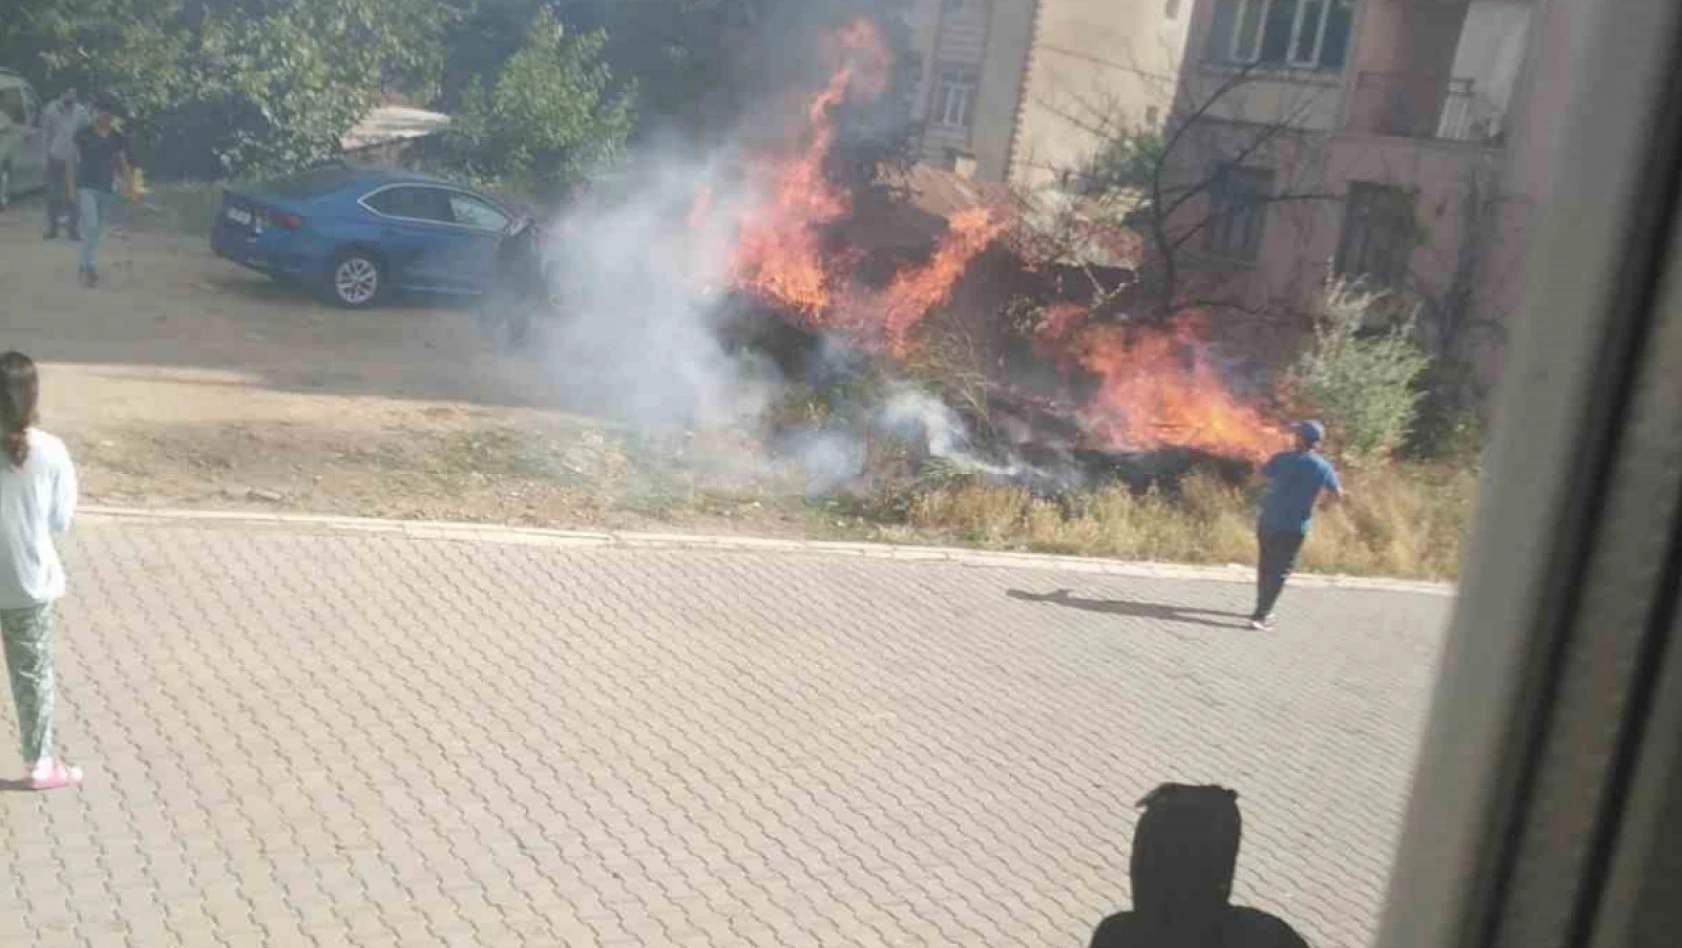 Elazığ'da korkutan yangın: Alevler evlere sıçramadan söndürüldü